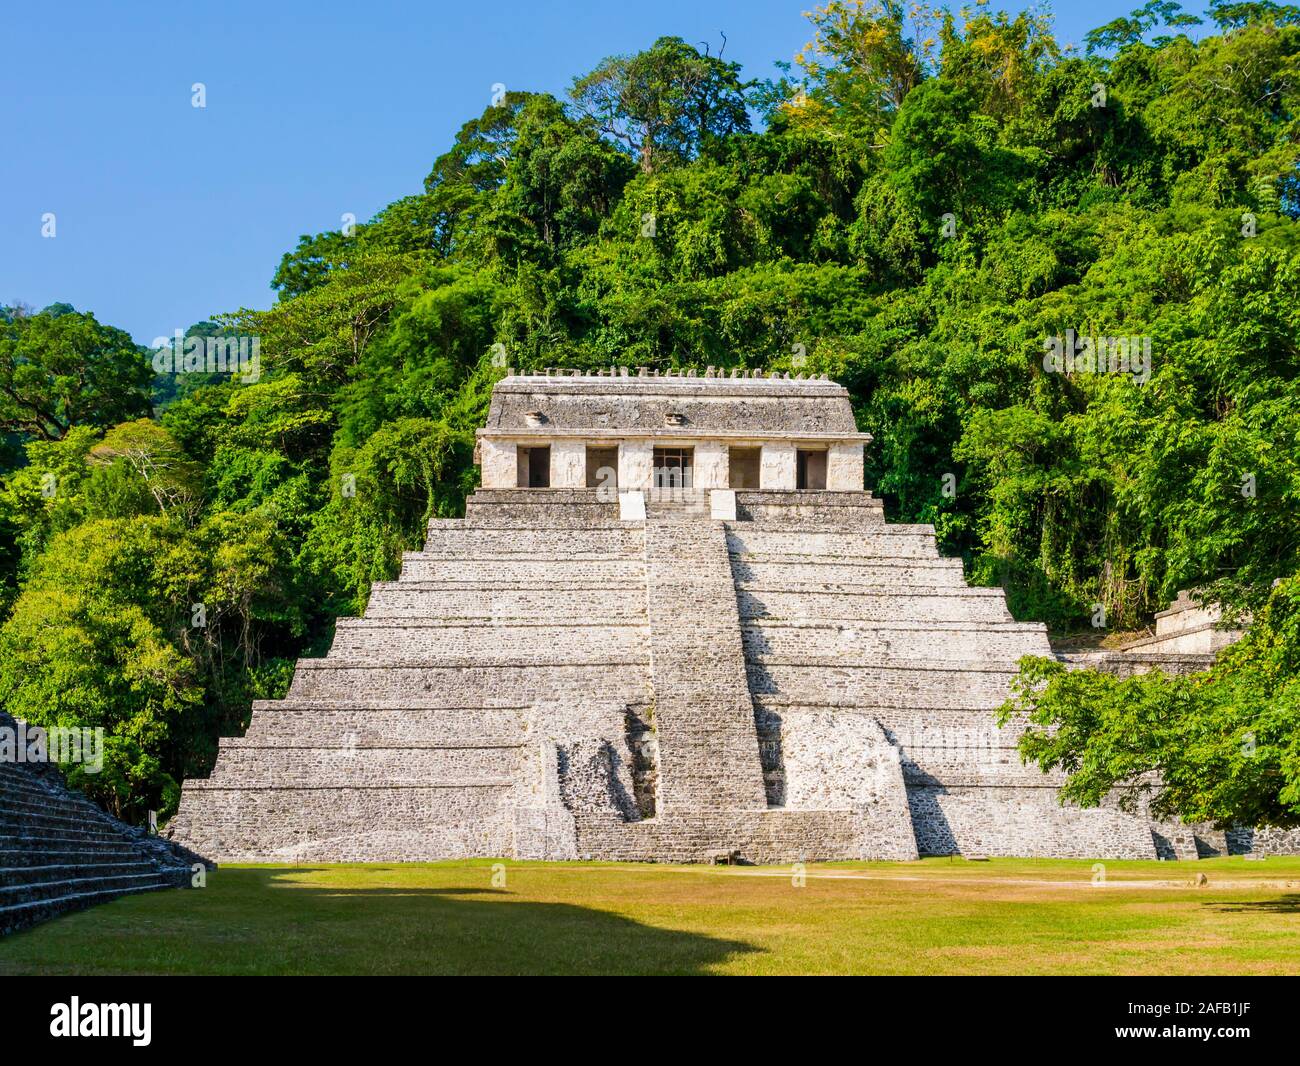 Vue imprenable de Temple des Inscriptions, site archéologique de Palenque, Chiapas, Mexique Banque D'Images